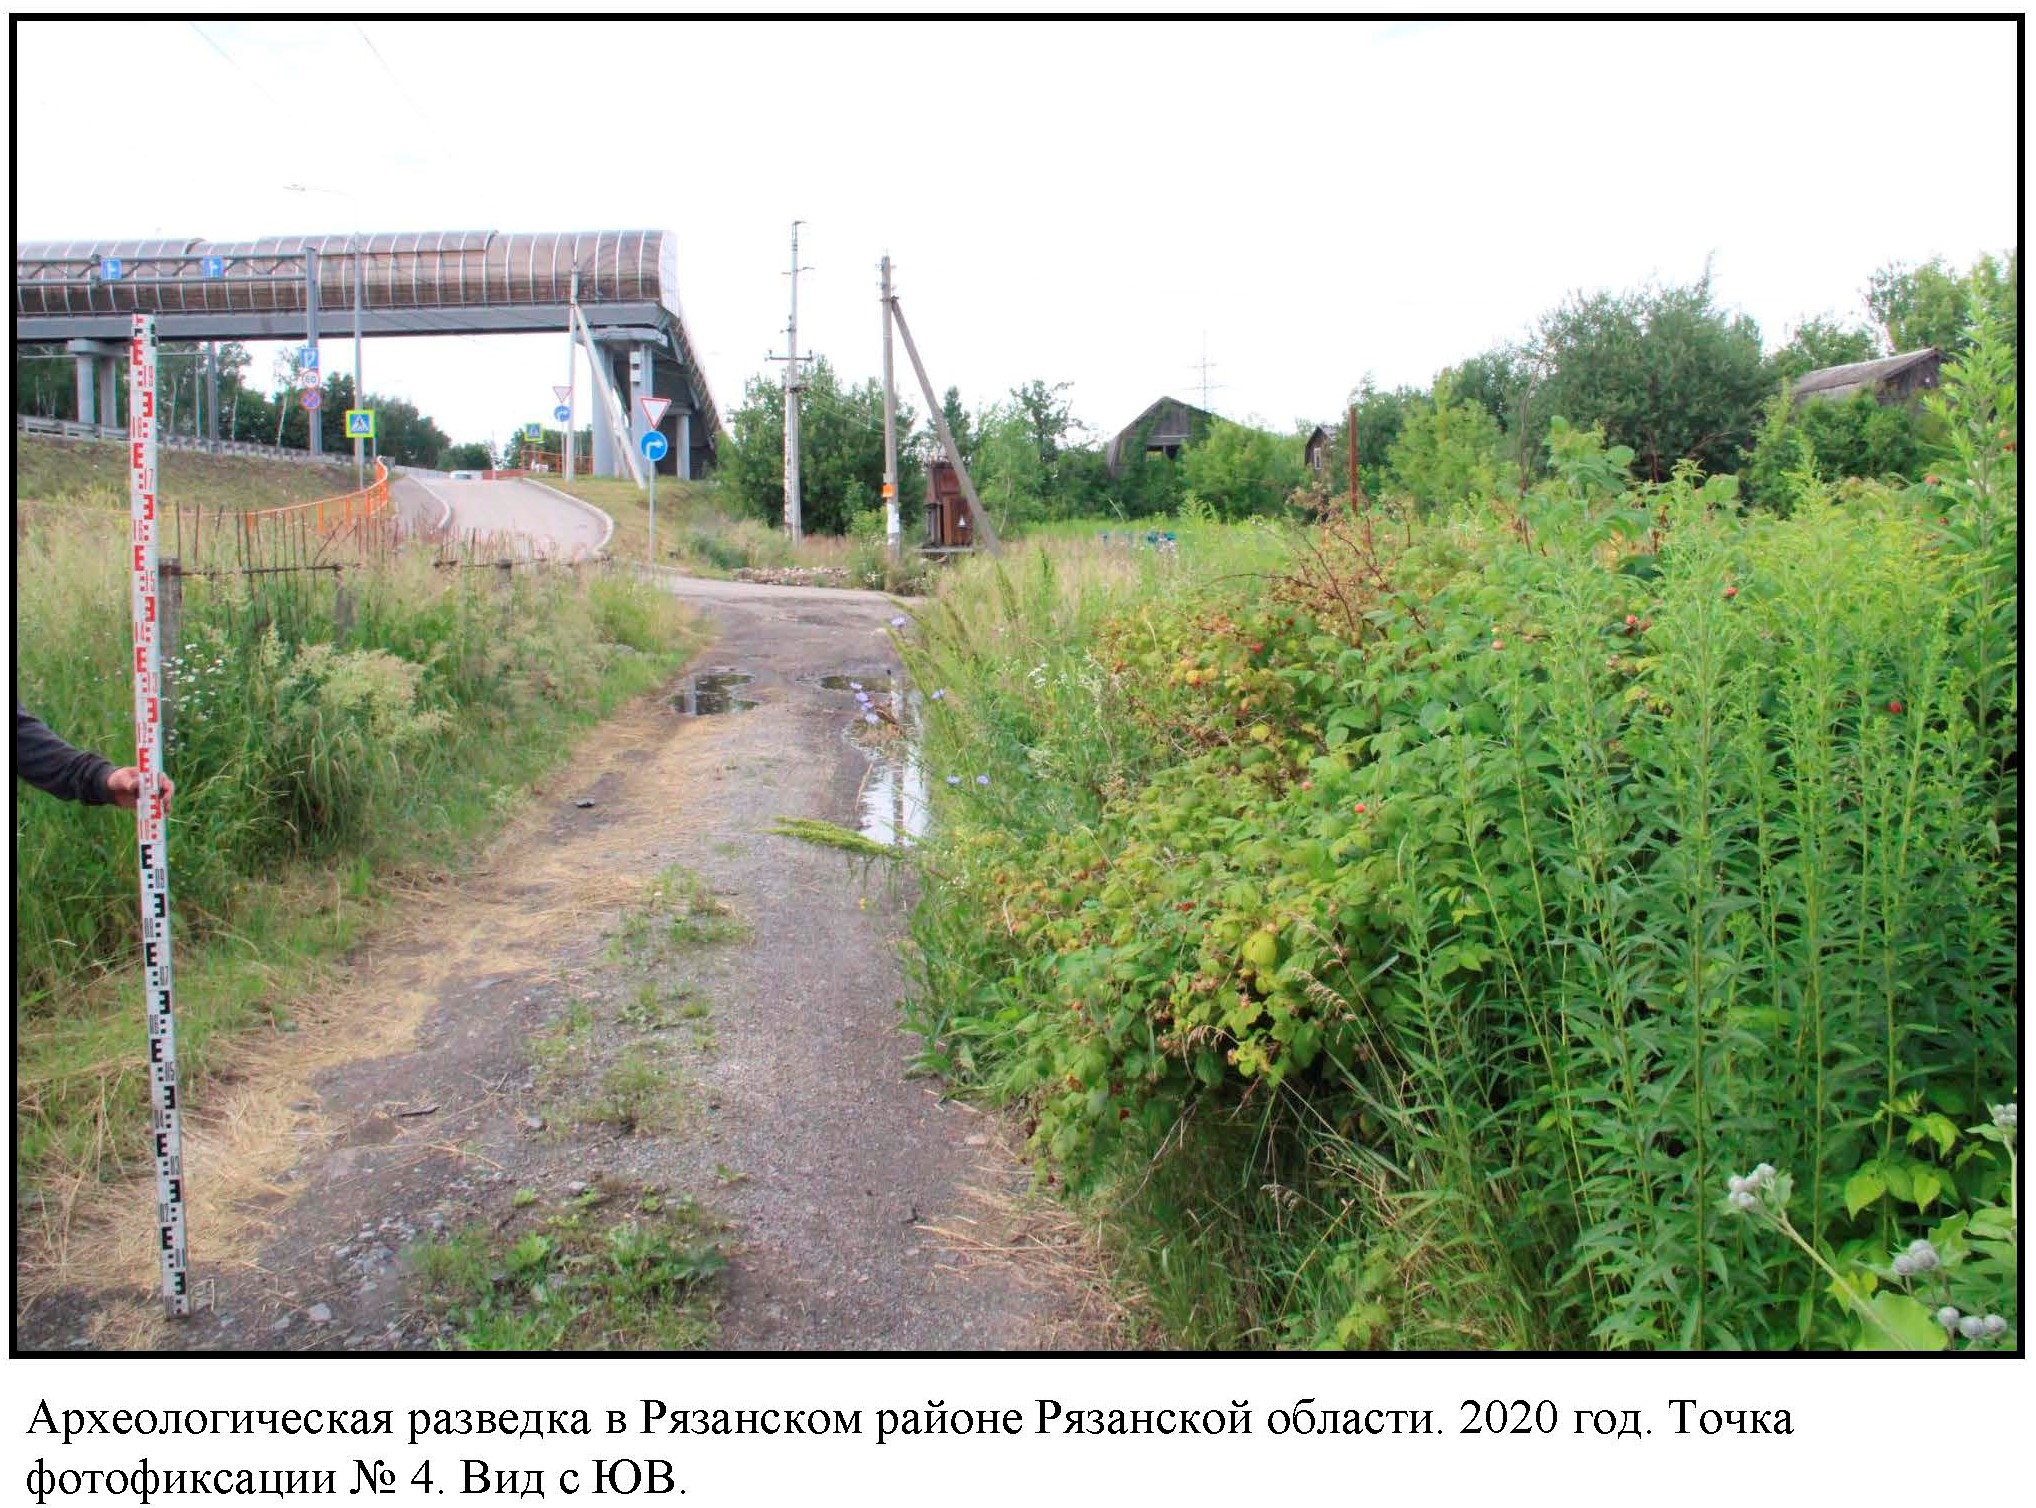 Археологическая разведка на участке реконструкции федеральной автодороги М-5 Урал в Рязанском районе Рязанской области в 2020 году